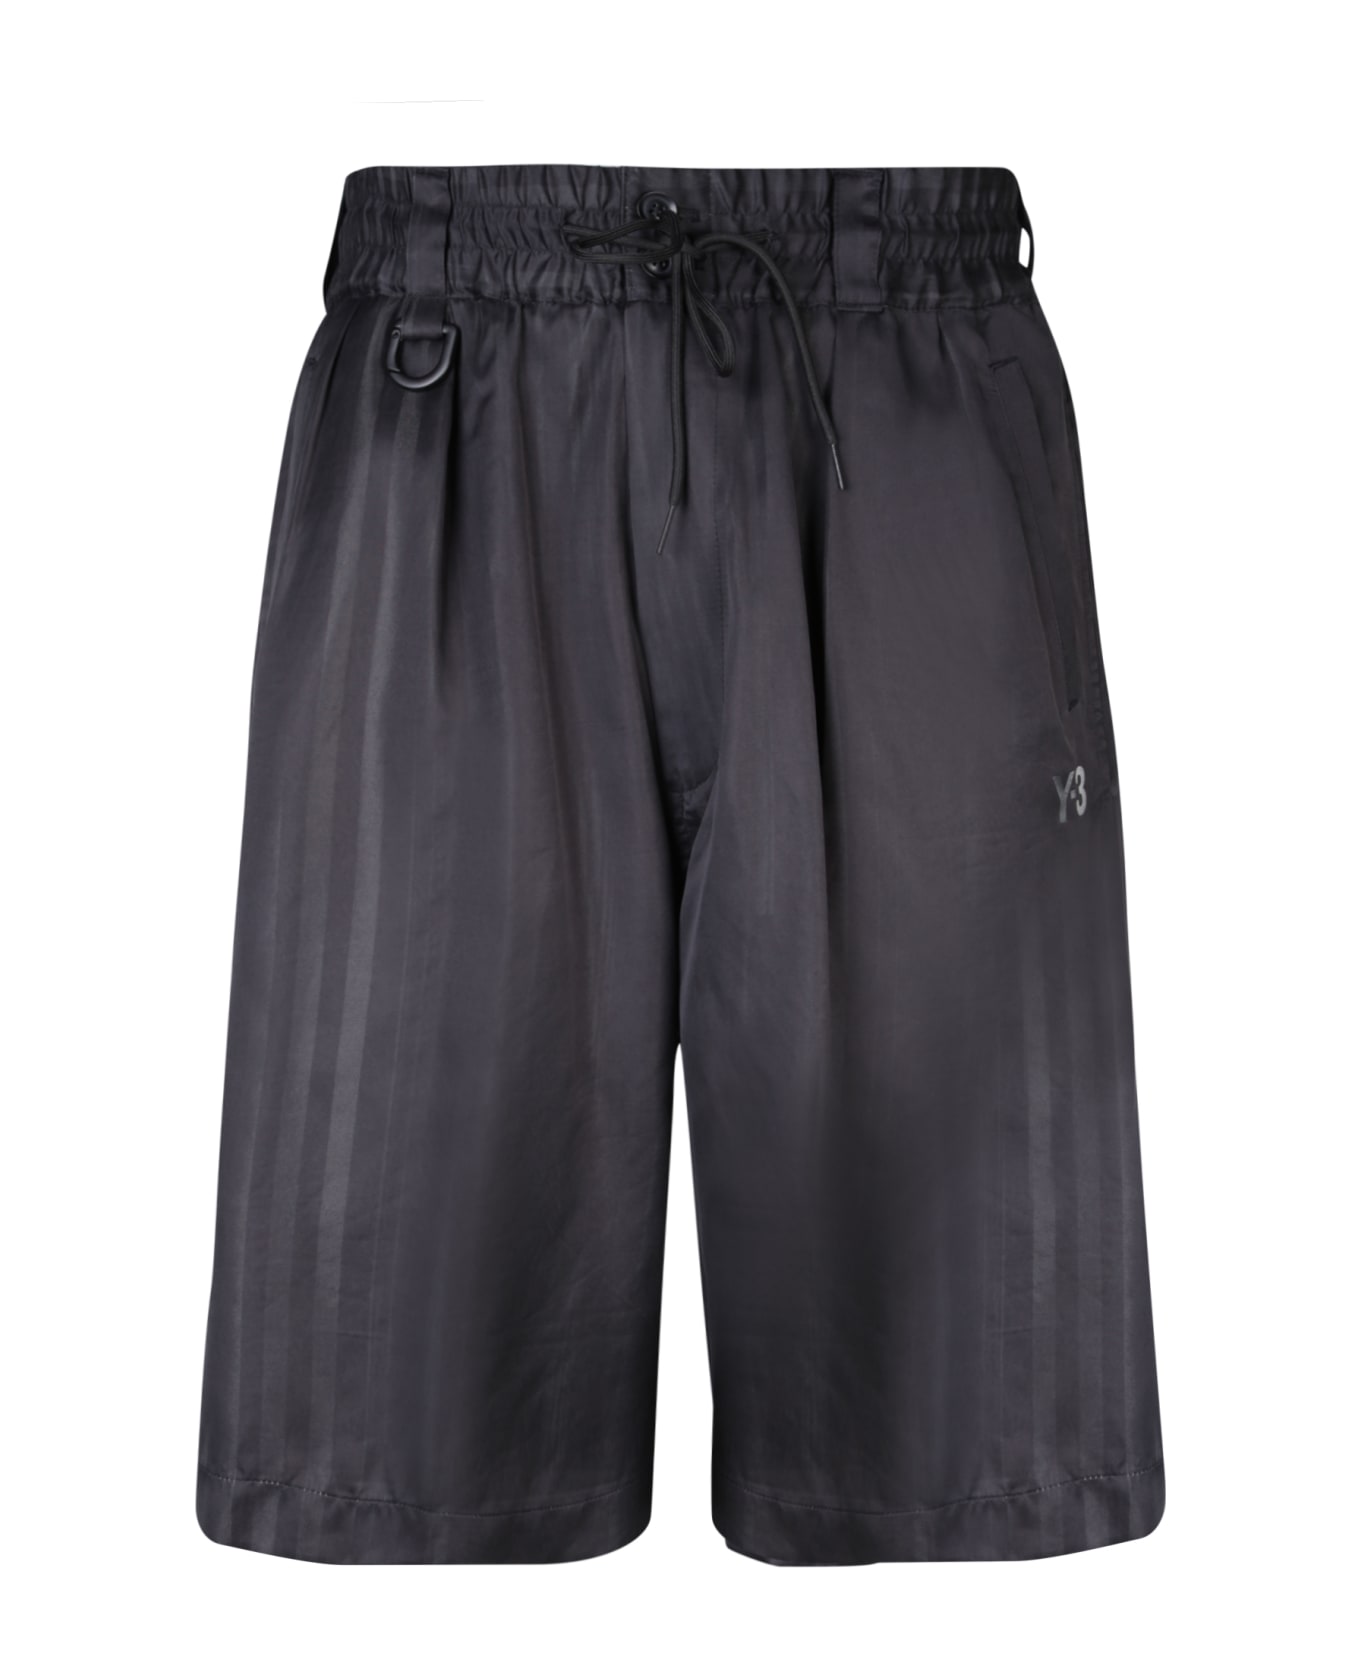 Y-3 Adidas Y-3 3s Black Bermuda Shorts - Black